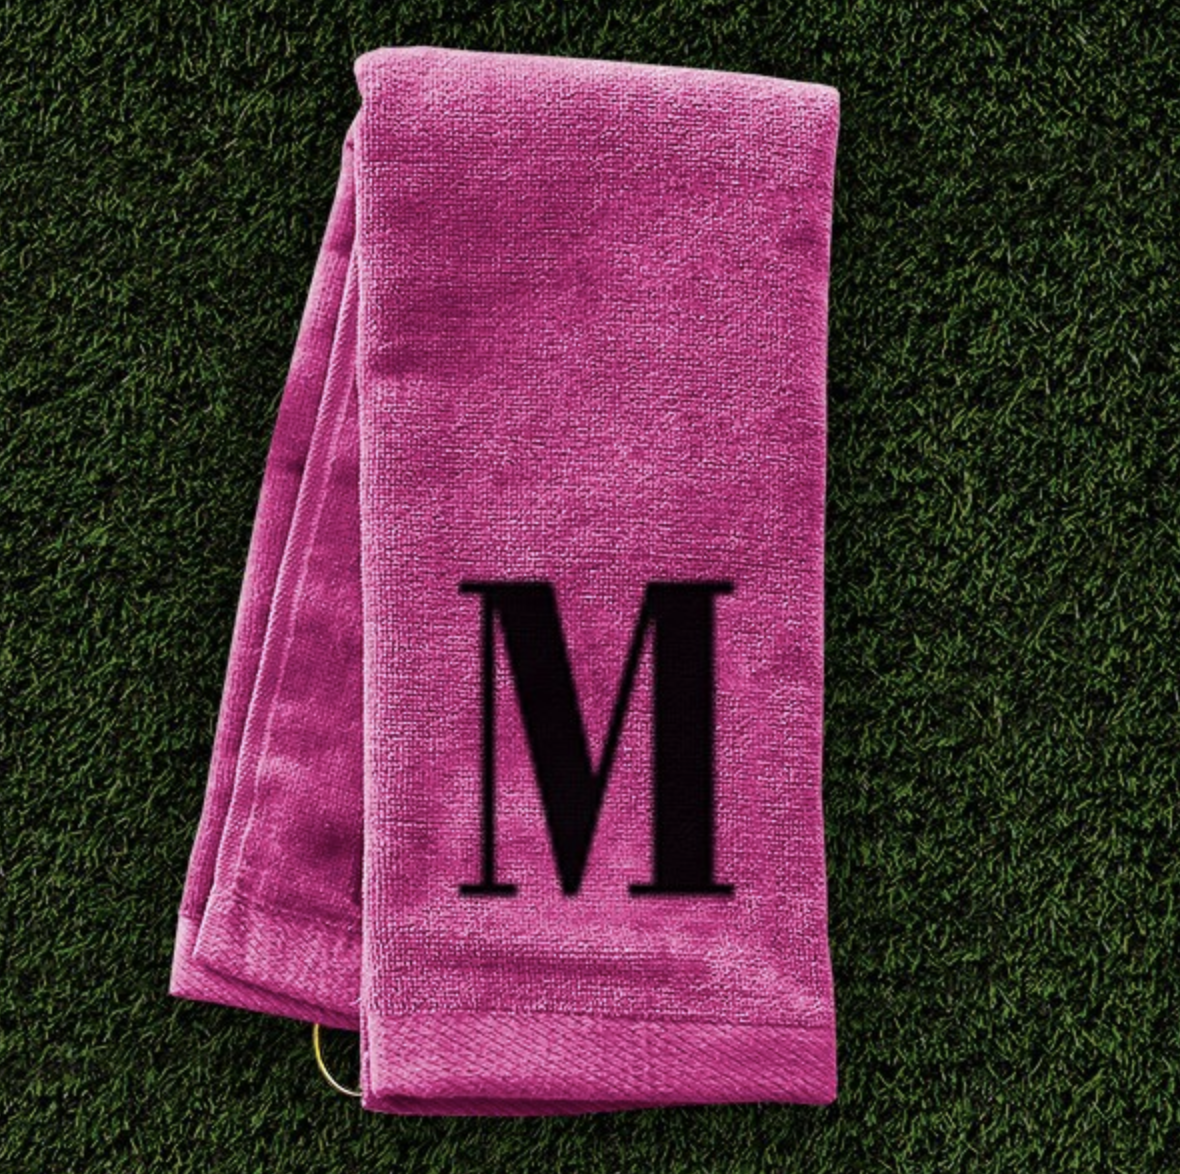 initial golf towel